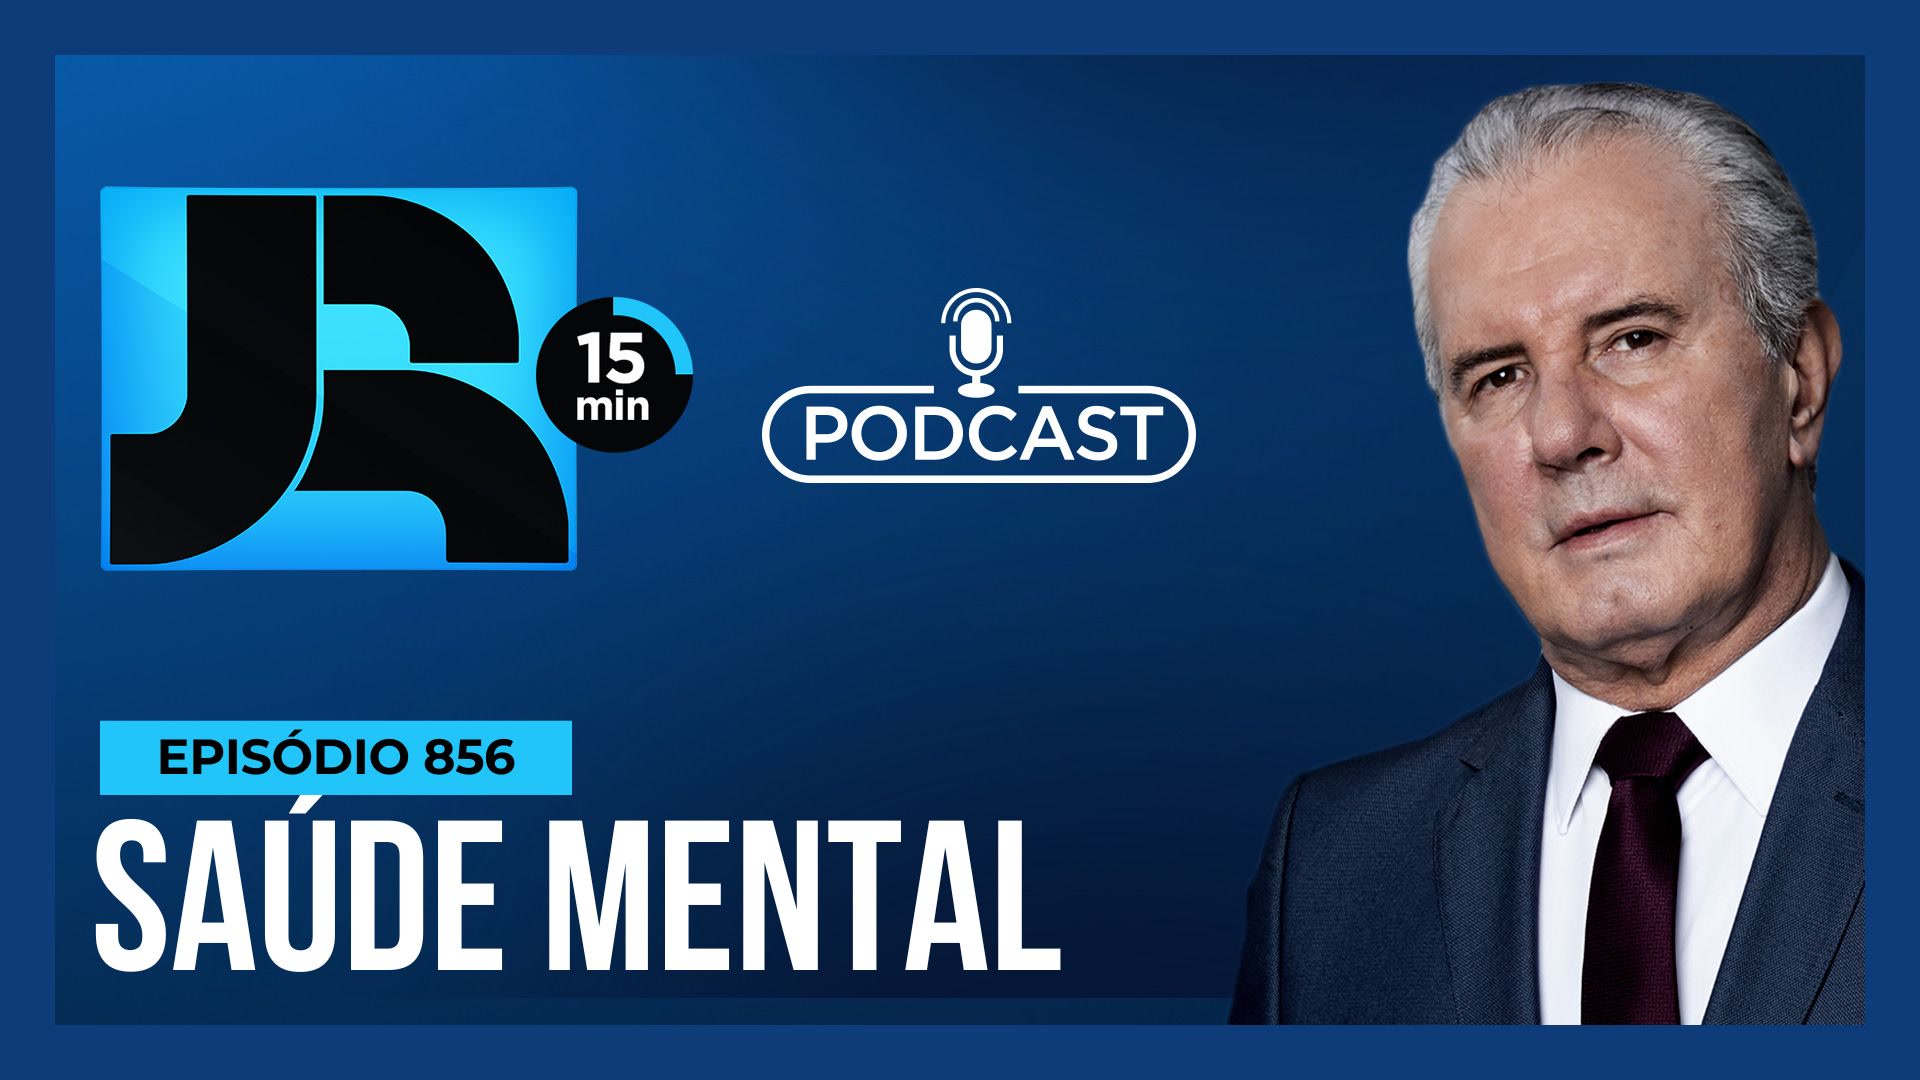 Vídeo: Podcast JR 15 Min #856 | Redes sociais e autodiagnóstico psicológico: quais os riscos?